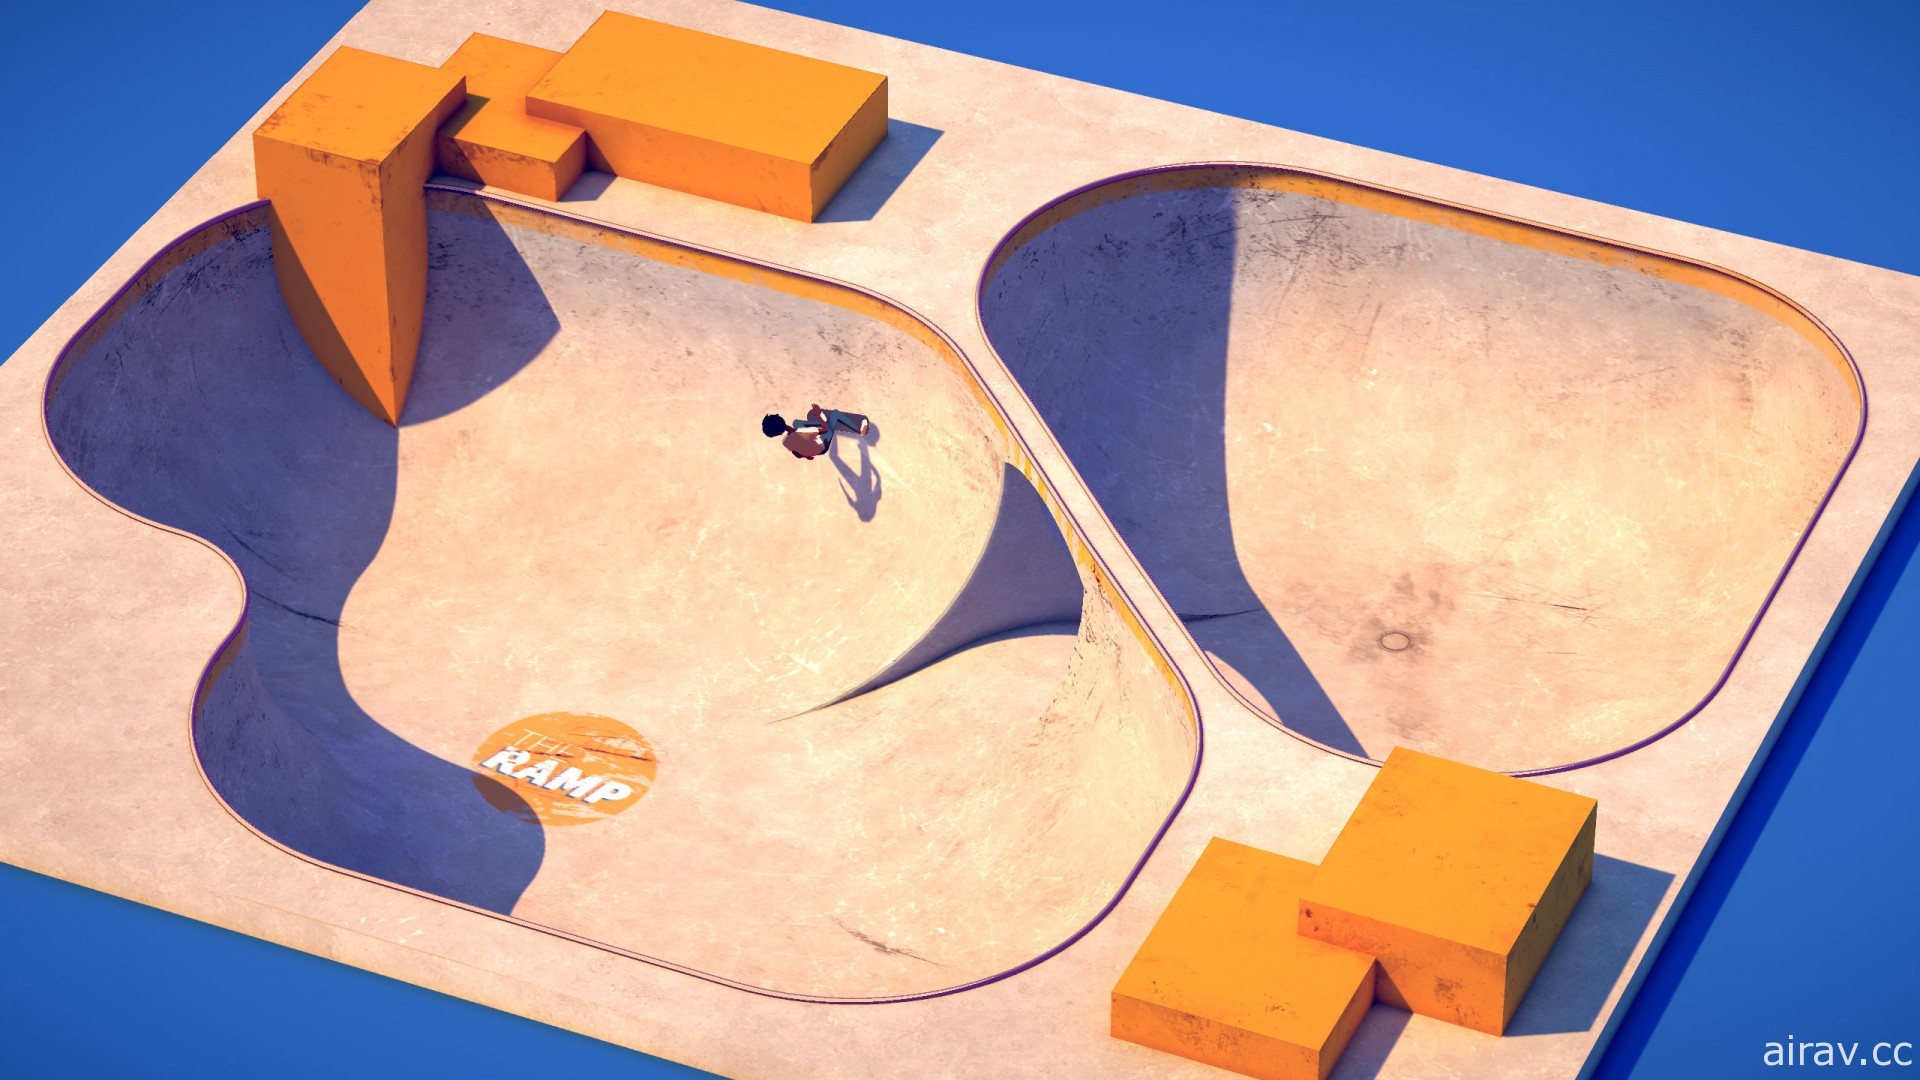 简朴的滑板题材新作《坡道大挑战》上市 享受在大小坡道飞跃的快感！